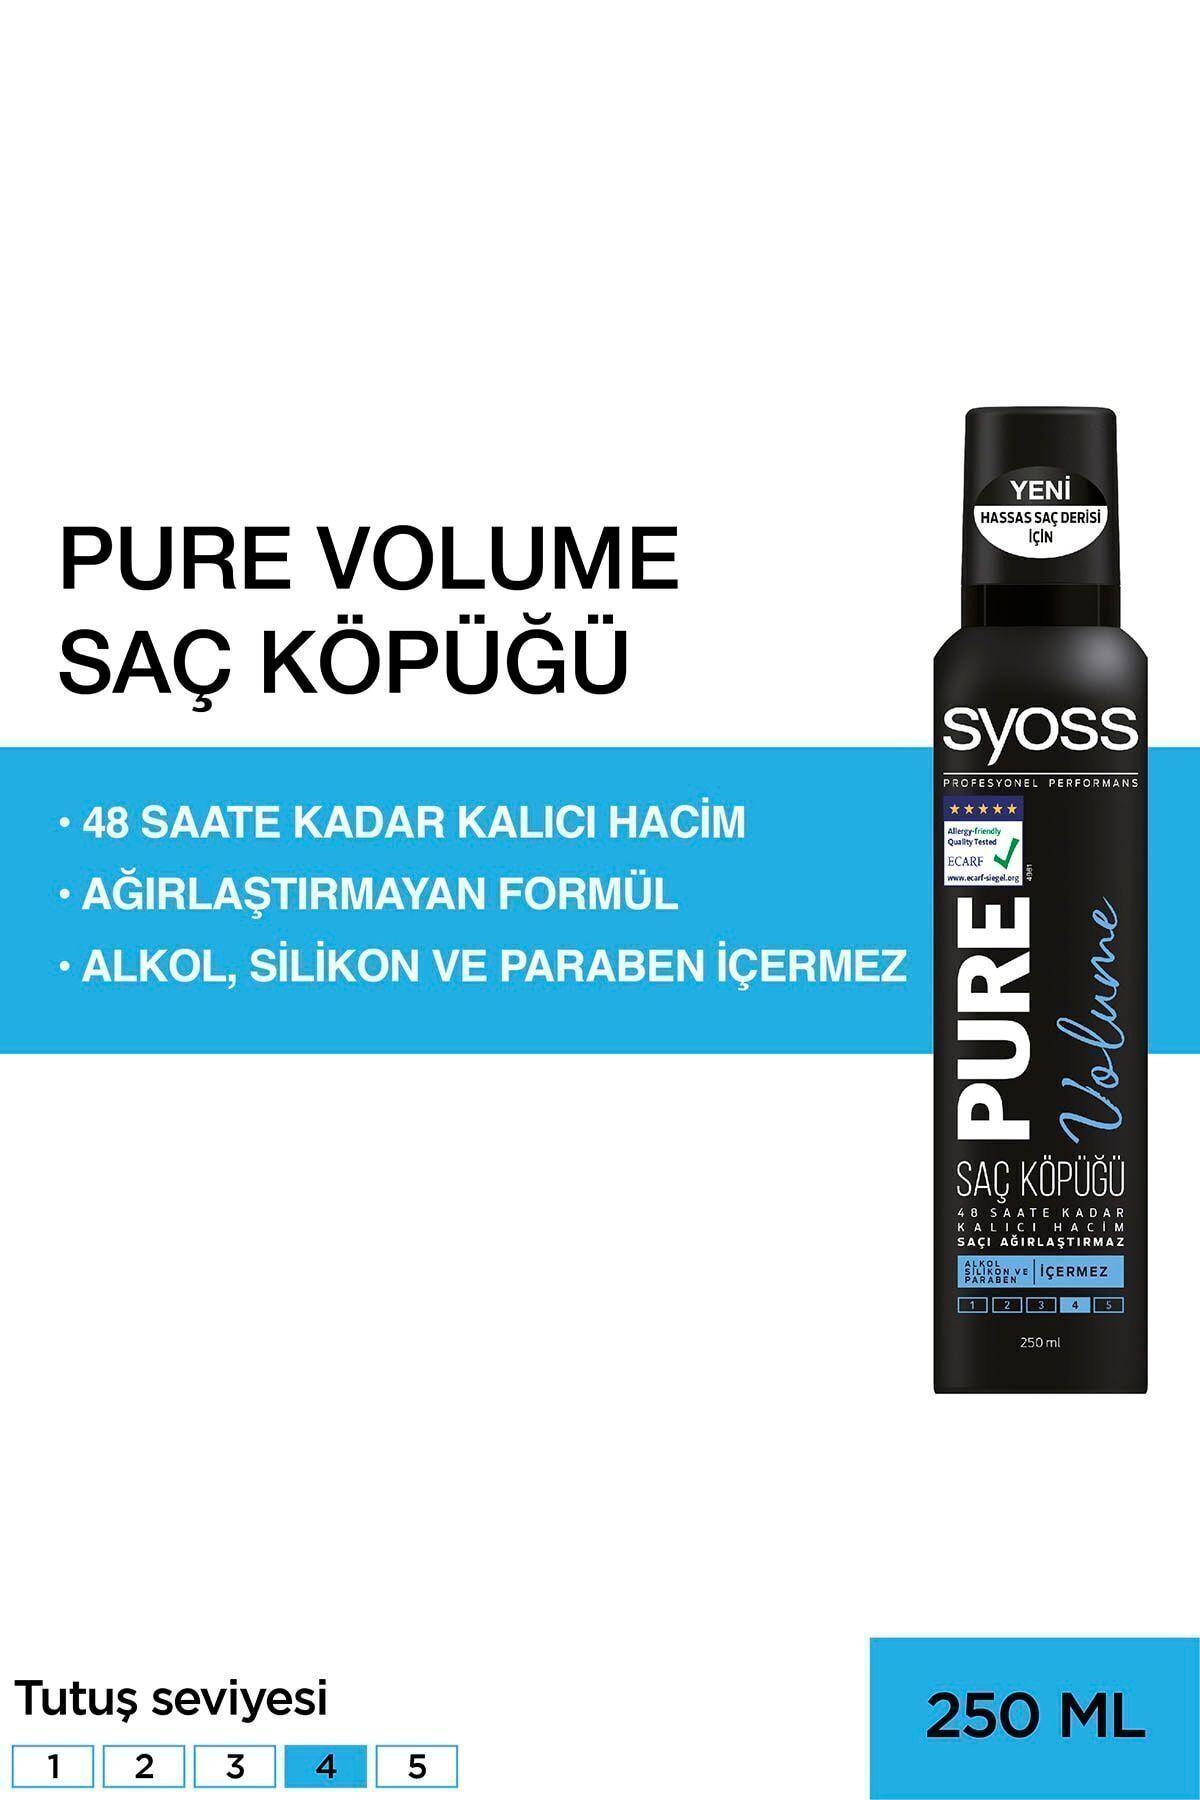 Syoss Pure Volume Saç Köpüğü